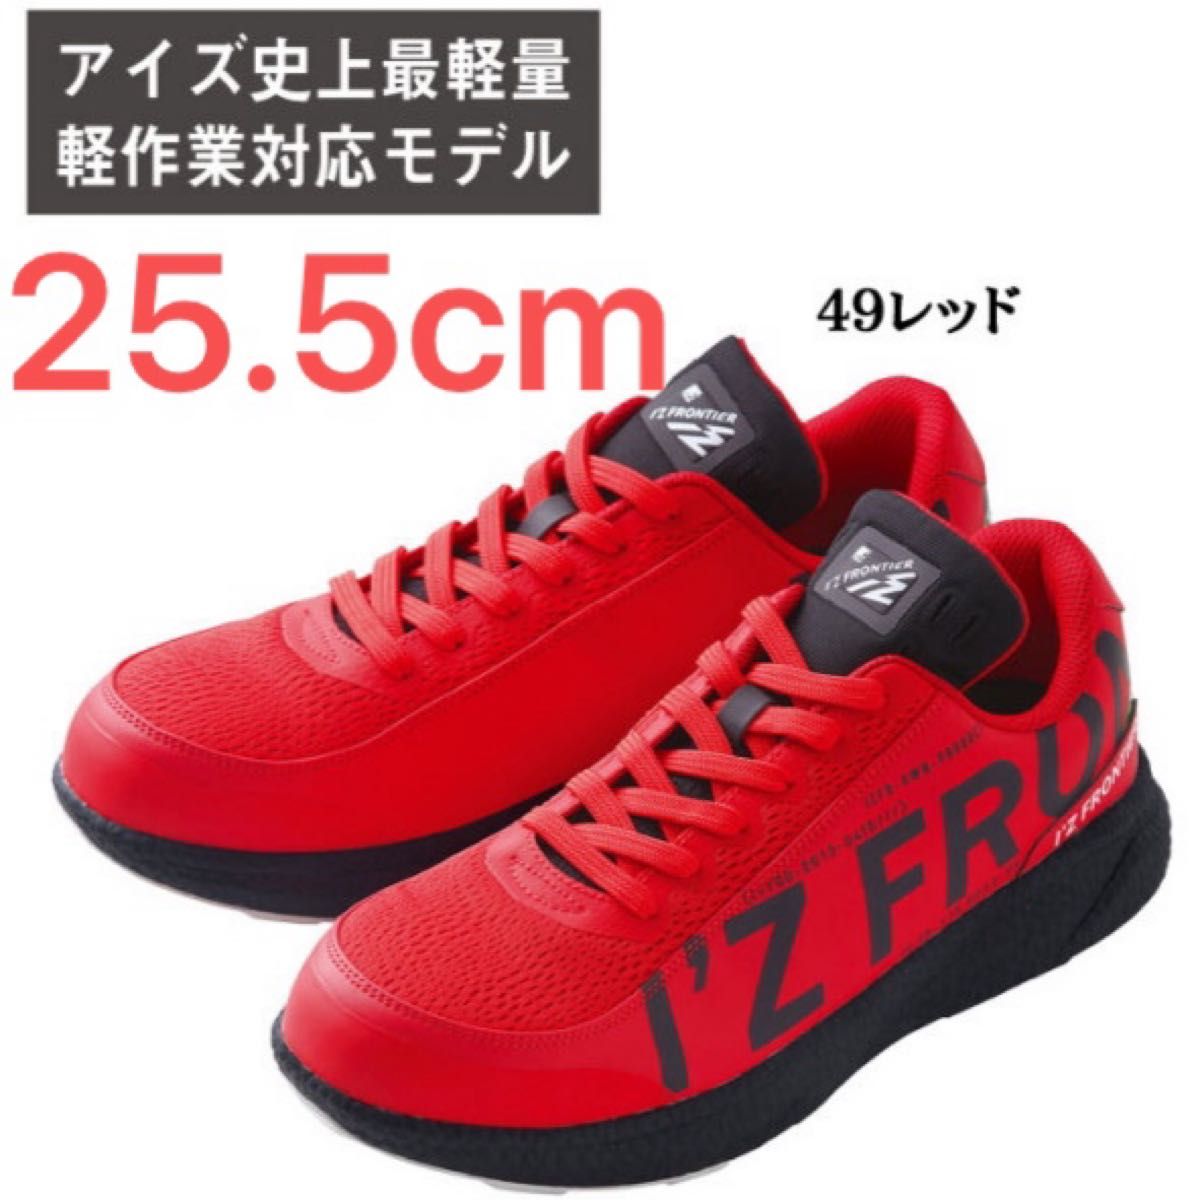 30030 [数量限定] 赤25.5cm 安全靴 アイズフロンティア I'Z FRONTIER セーフティーシューズ 耐油